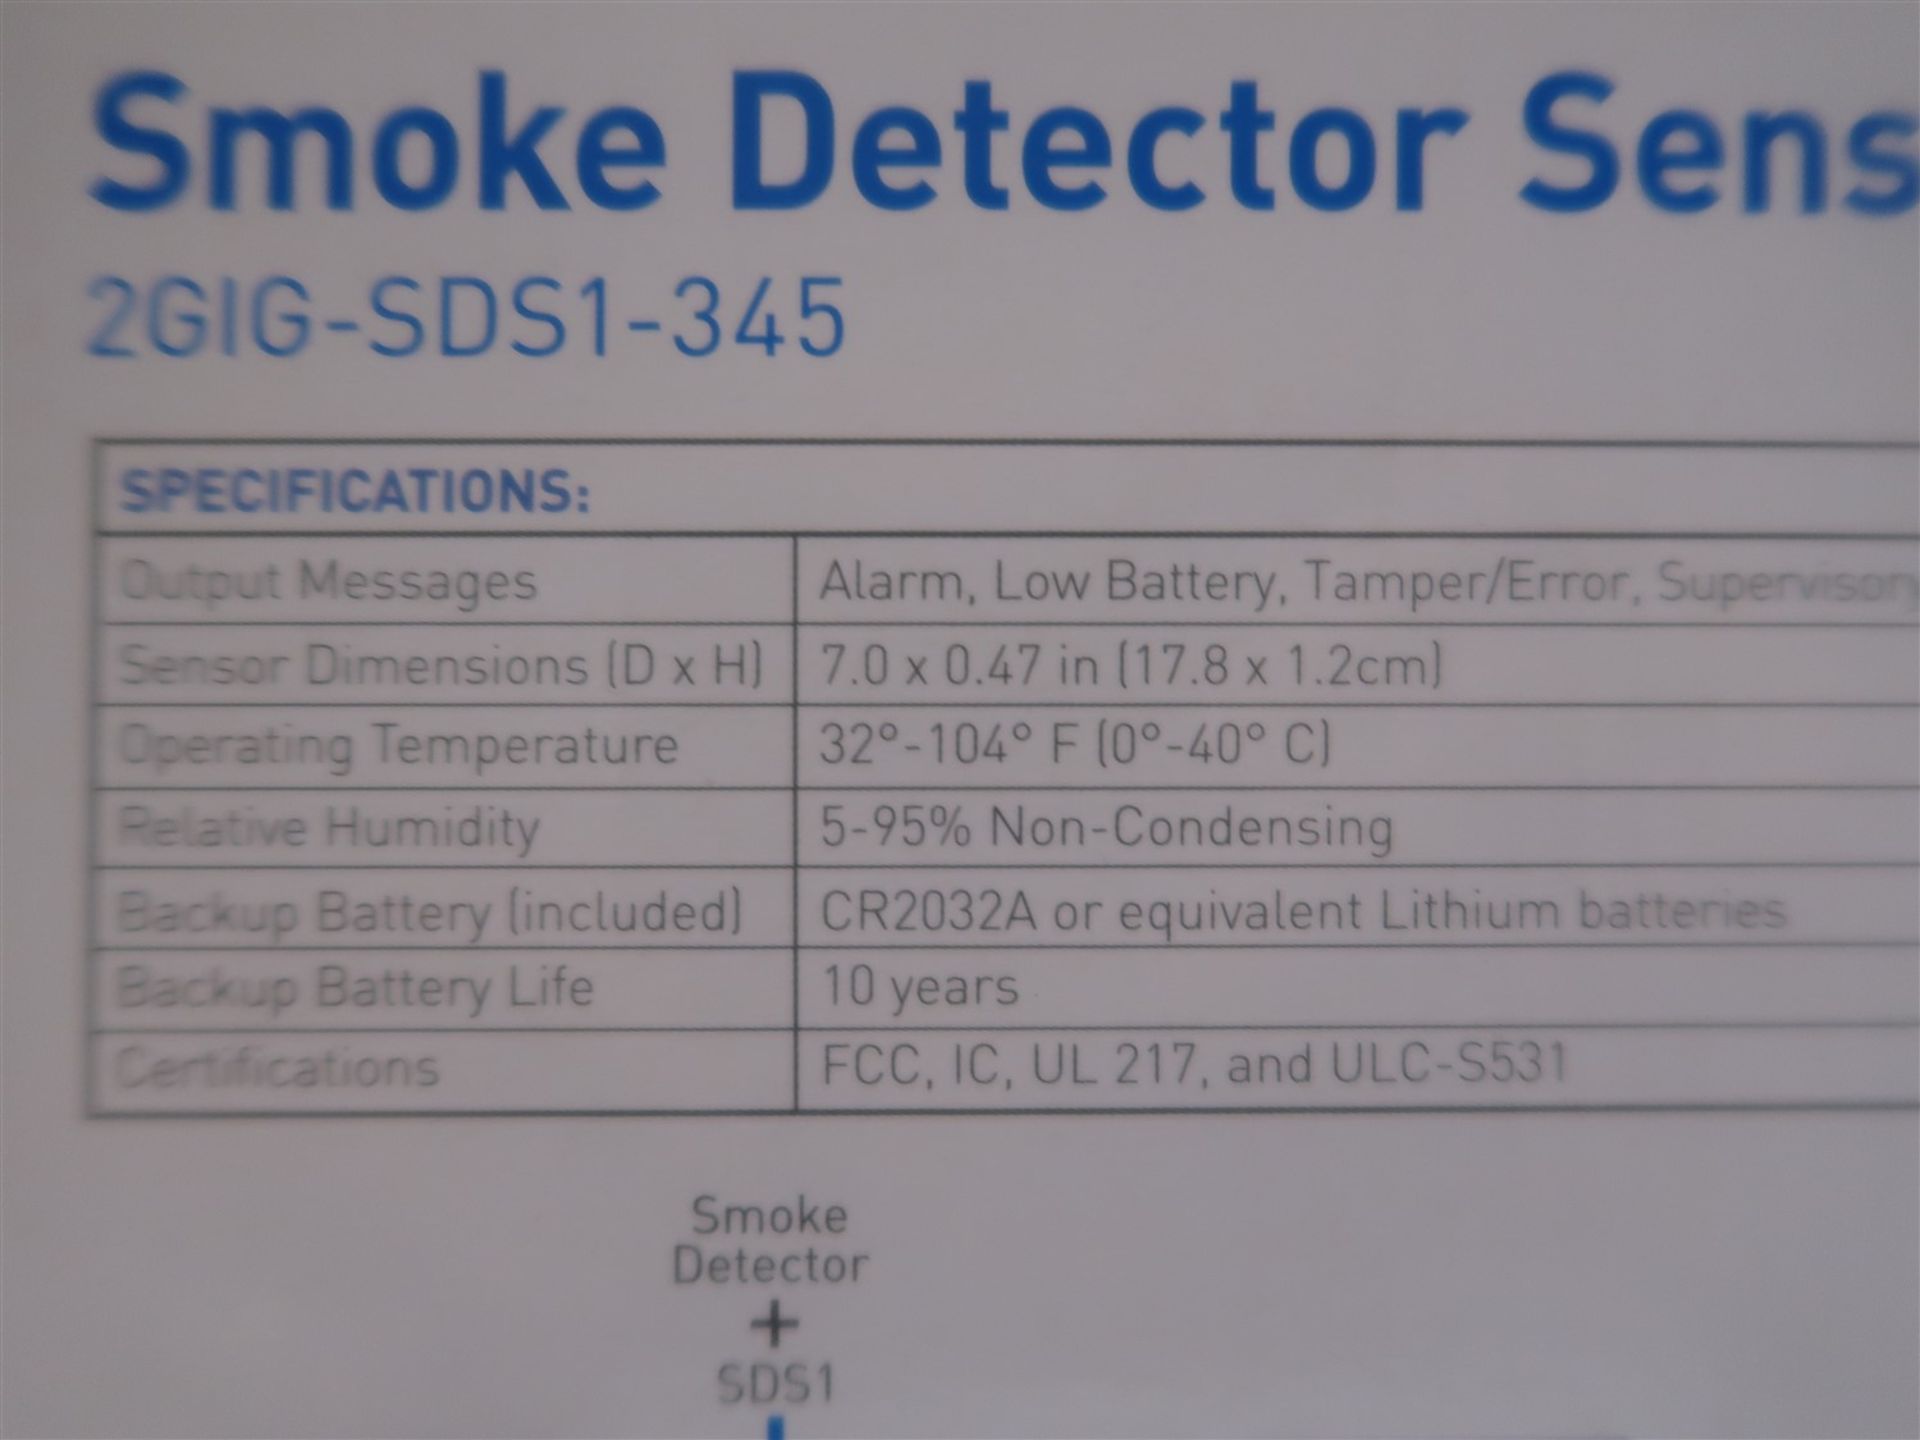 2 GIG SMOKE DETECTOR SENSOR SDS1-345 (BNIB) - Image 2 of 3